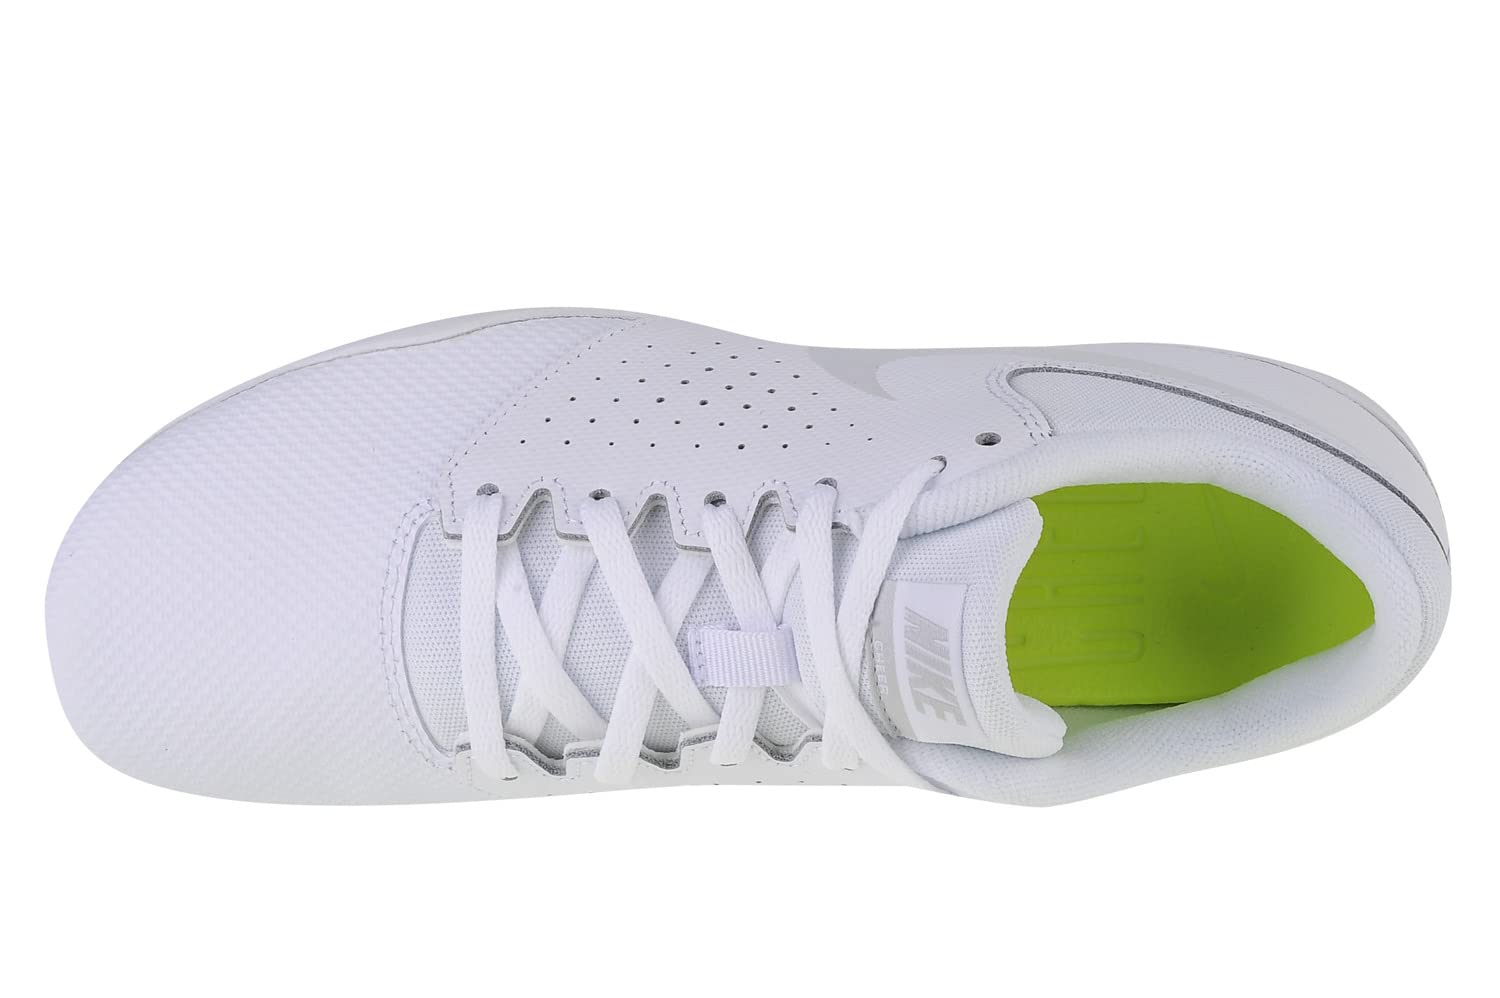 Nike Women's Sideline IV Cheerleading Shoe White/Pure Platinum Size 9.5 M US